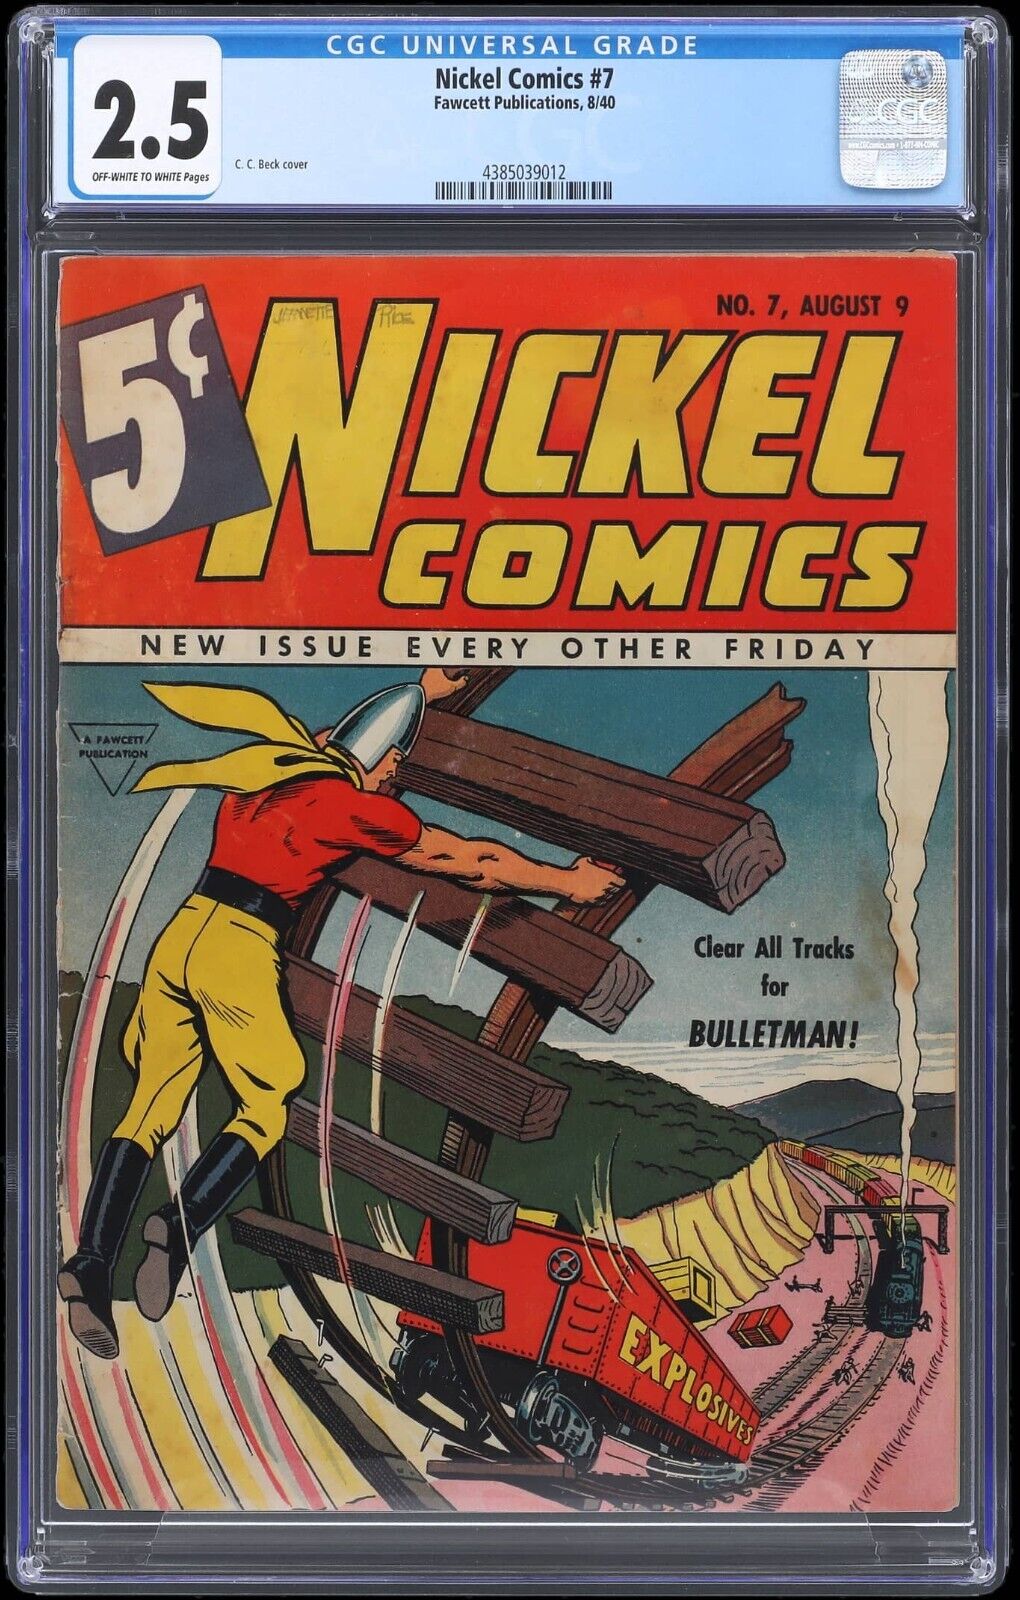 1940 Fawcett Publications Nickel Comics #7 CGC 2.5 Golden Age